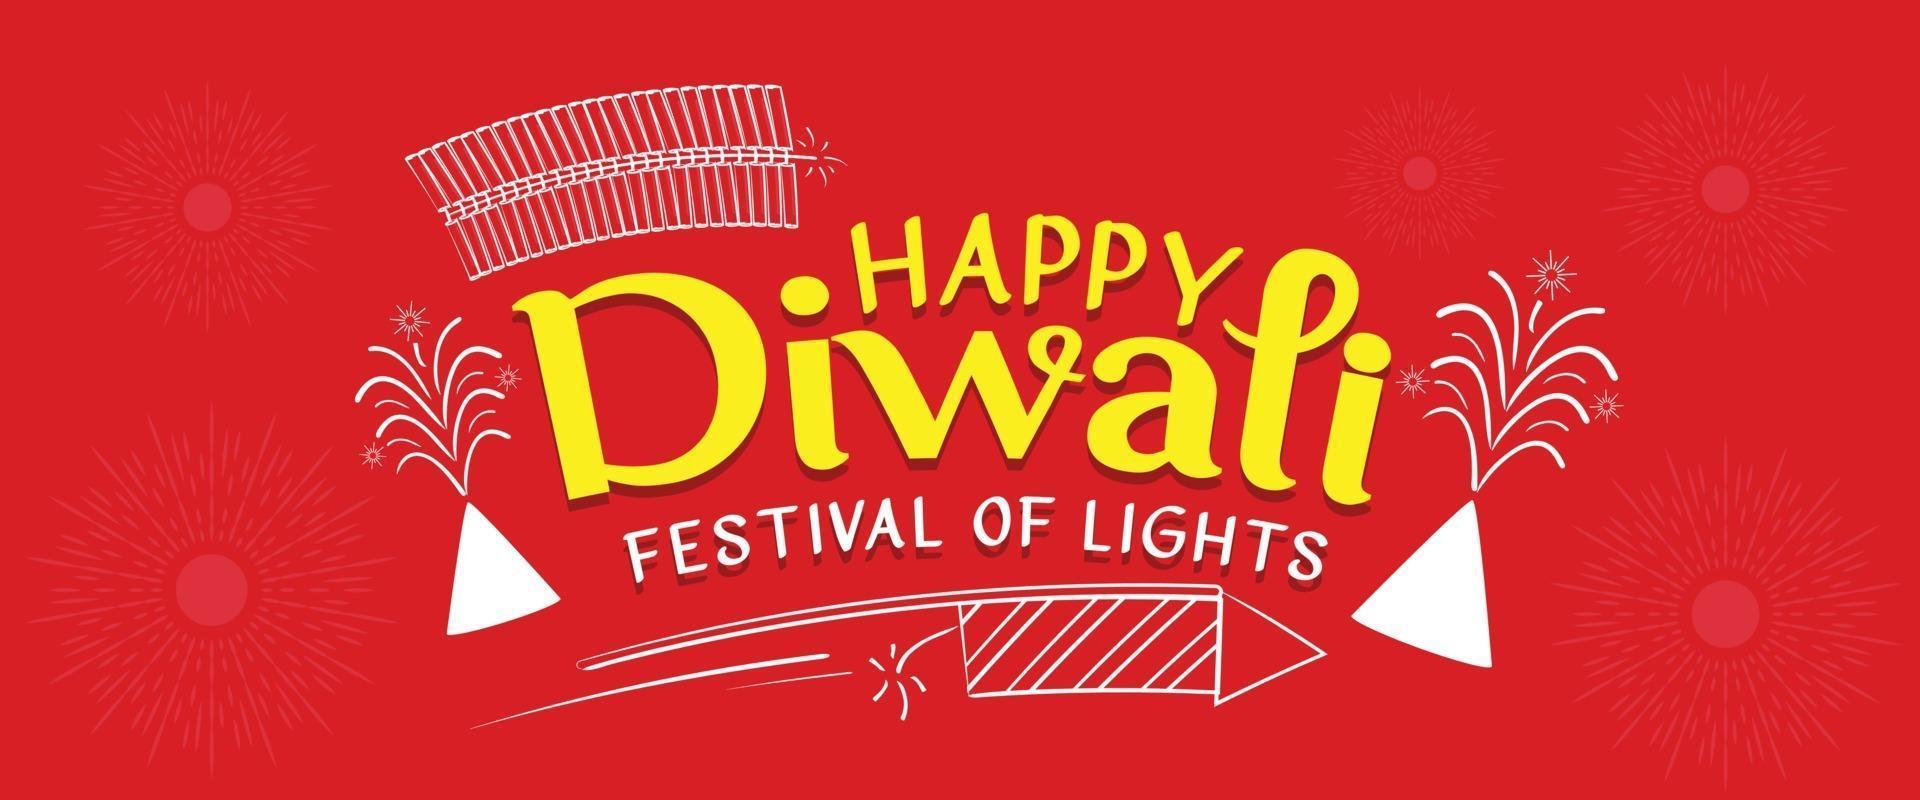 felice diwali augura un disegno vettoriale tipografico per il download gratuito